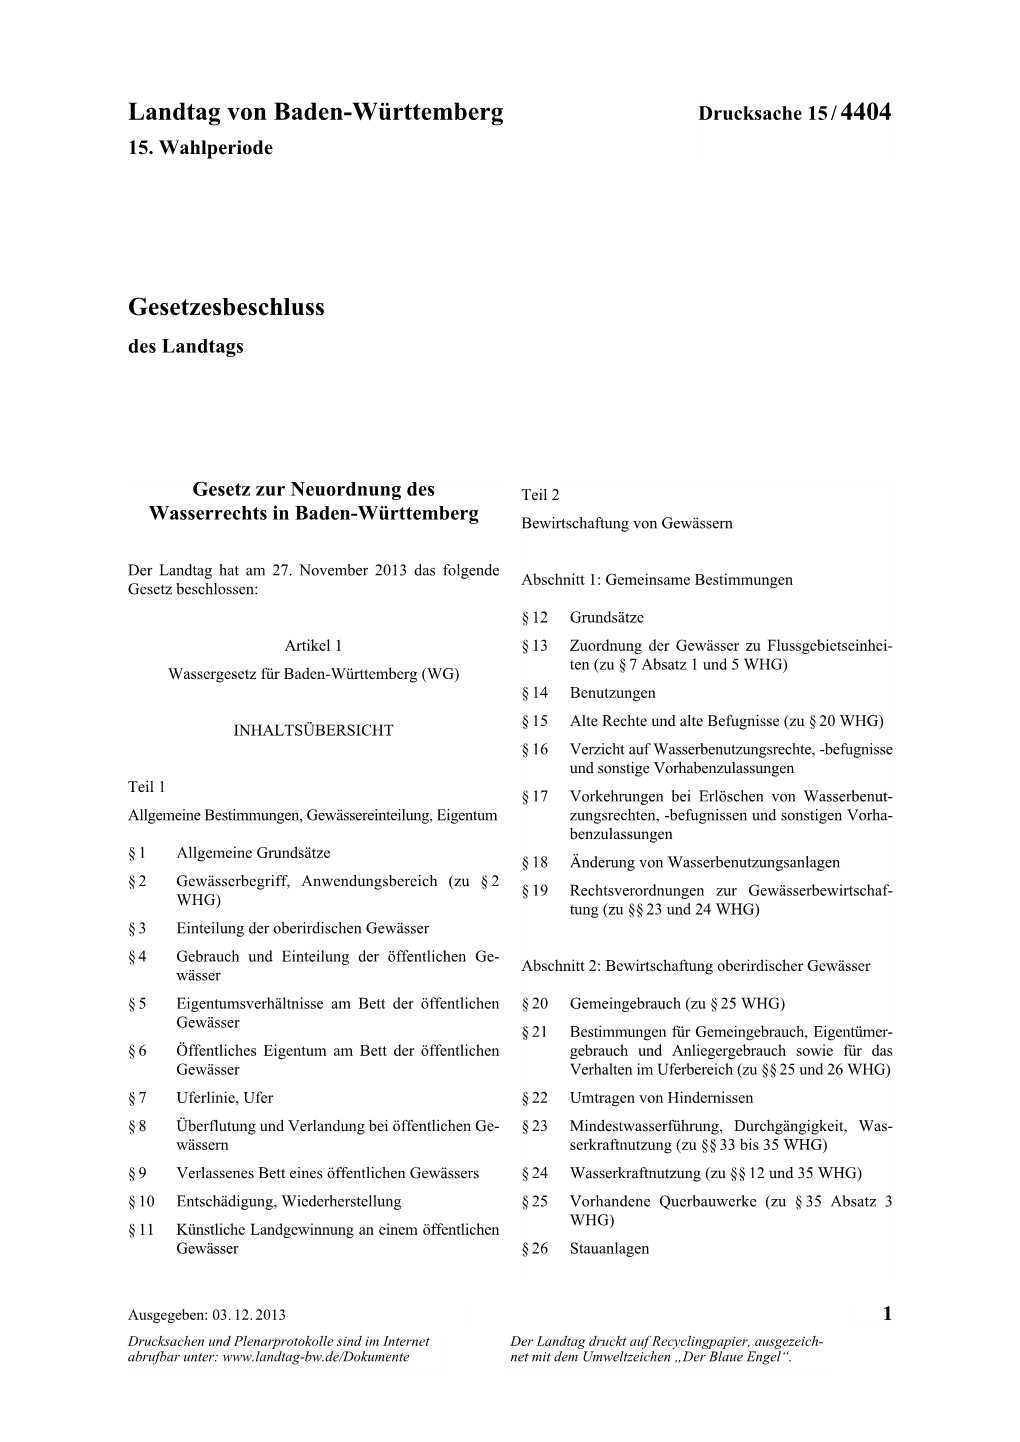 Landtag Von Baden-Württemberg Gesetzesbeschluss